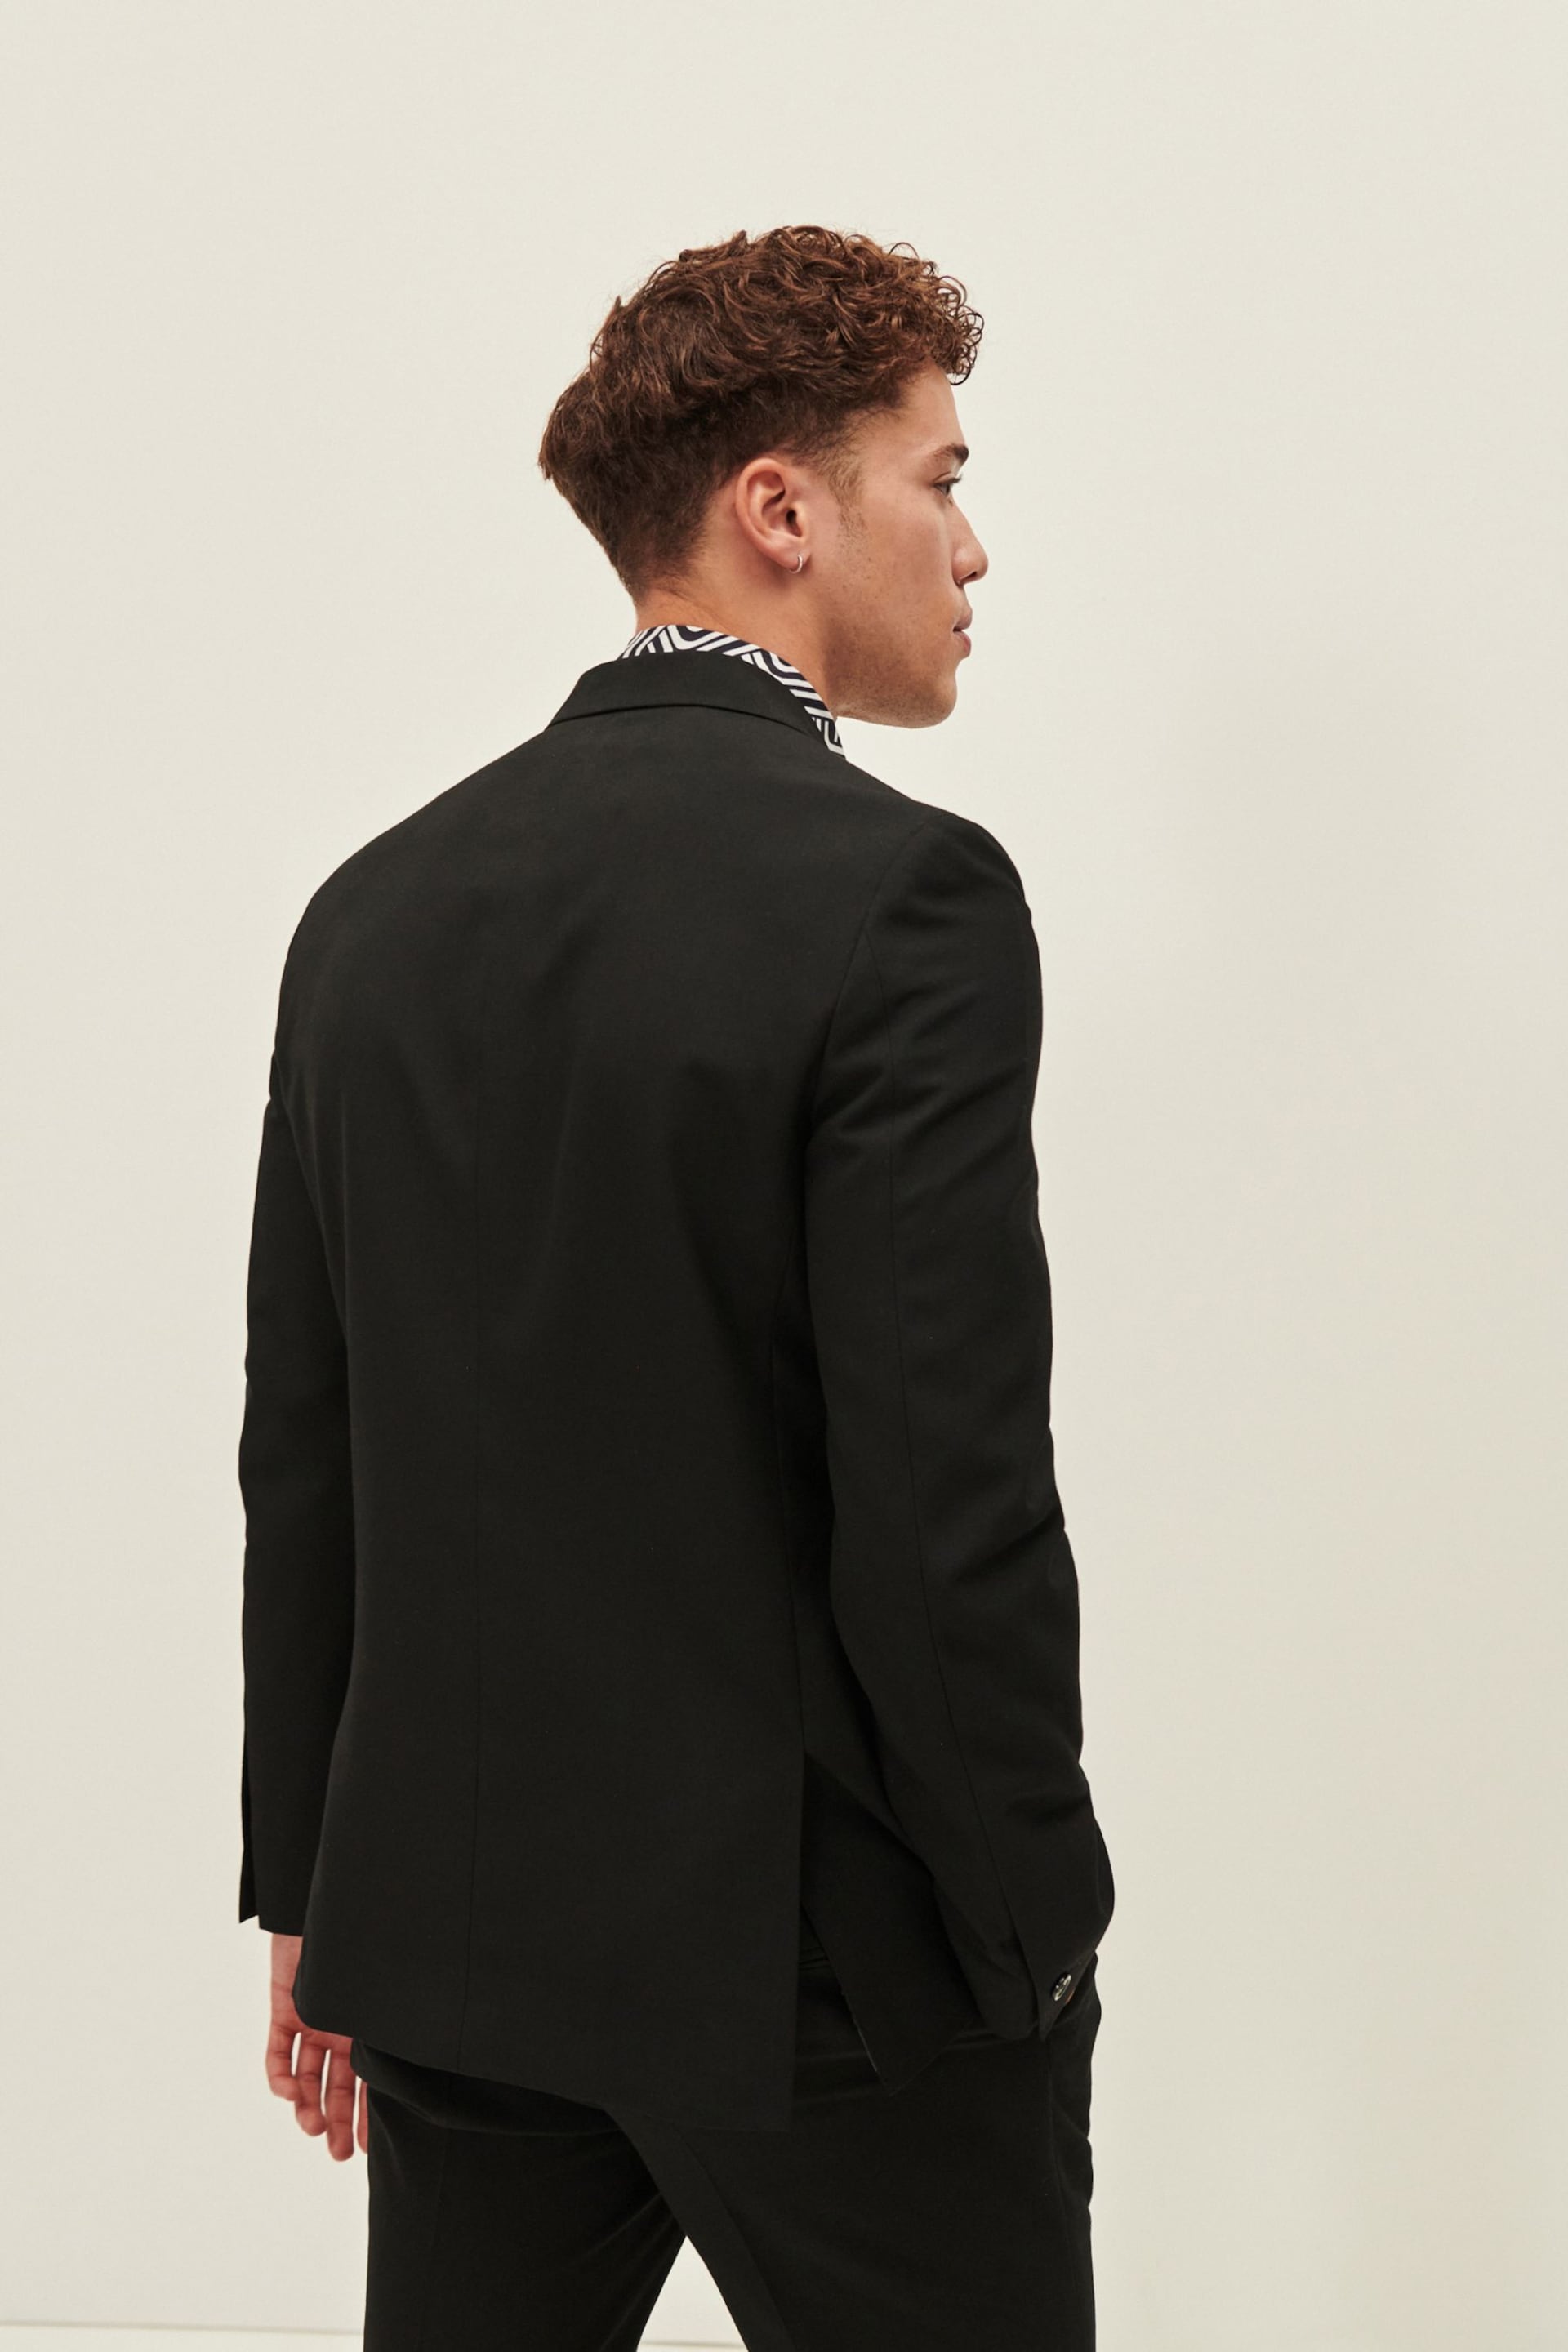 Black EDIT Slim Fit Wrap Front Suit Jacket - Image 3 of 7